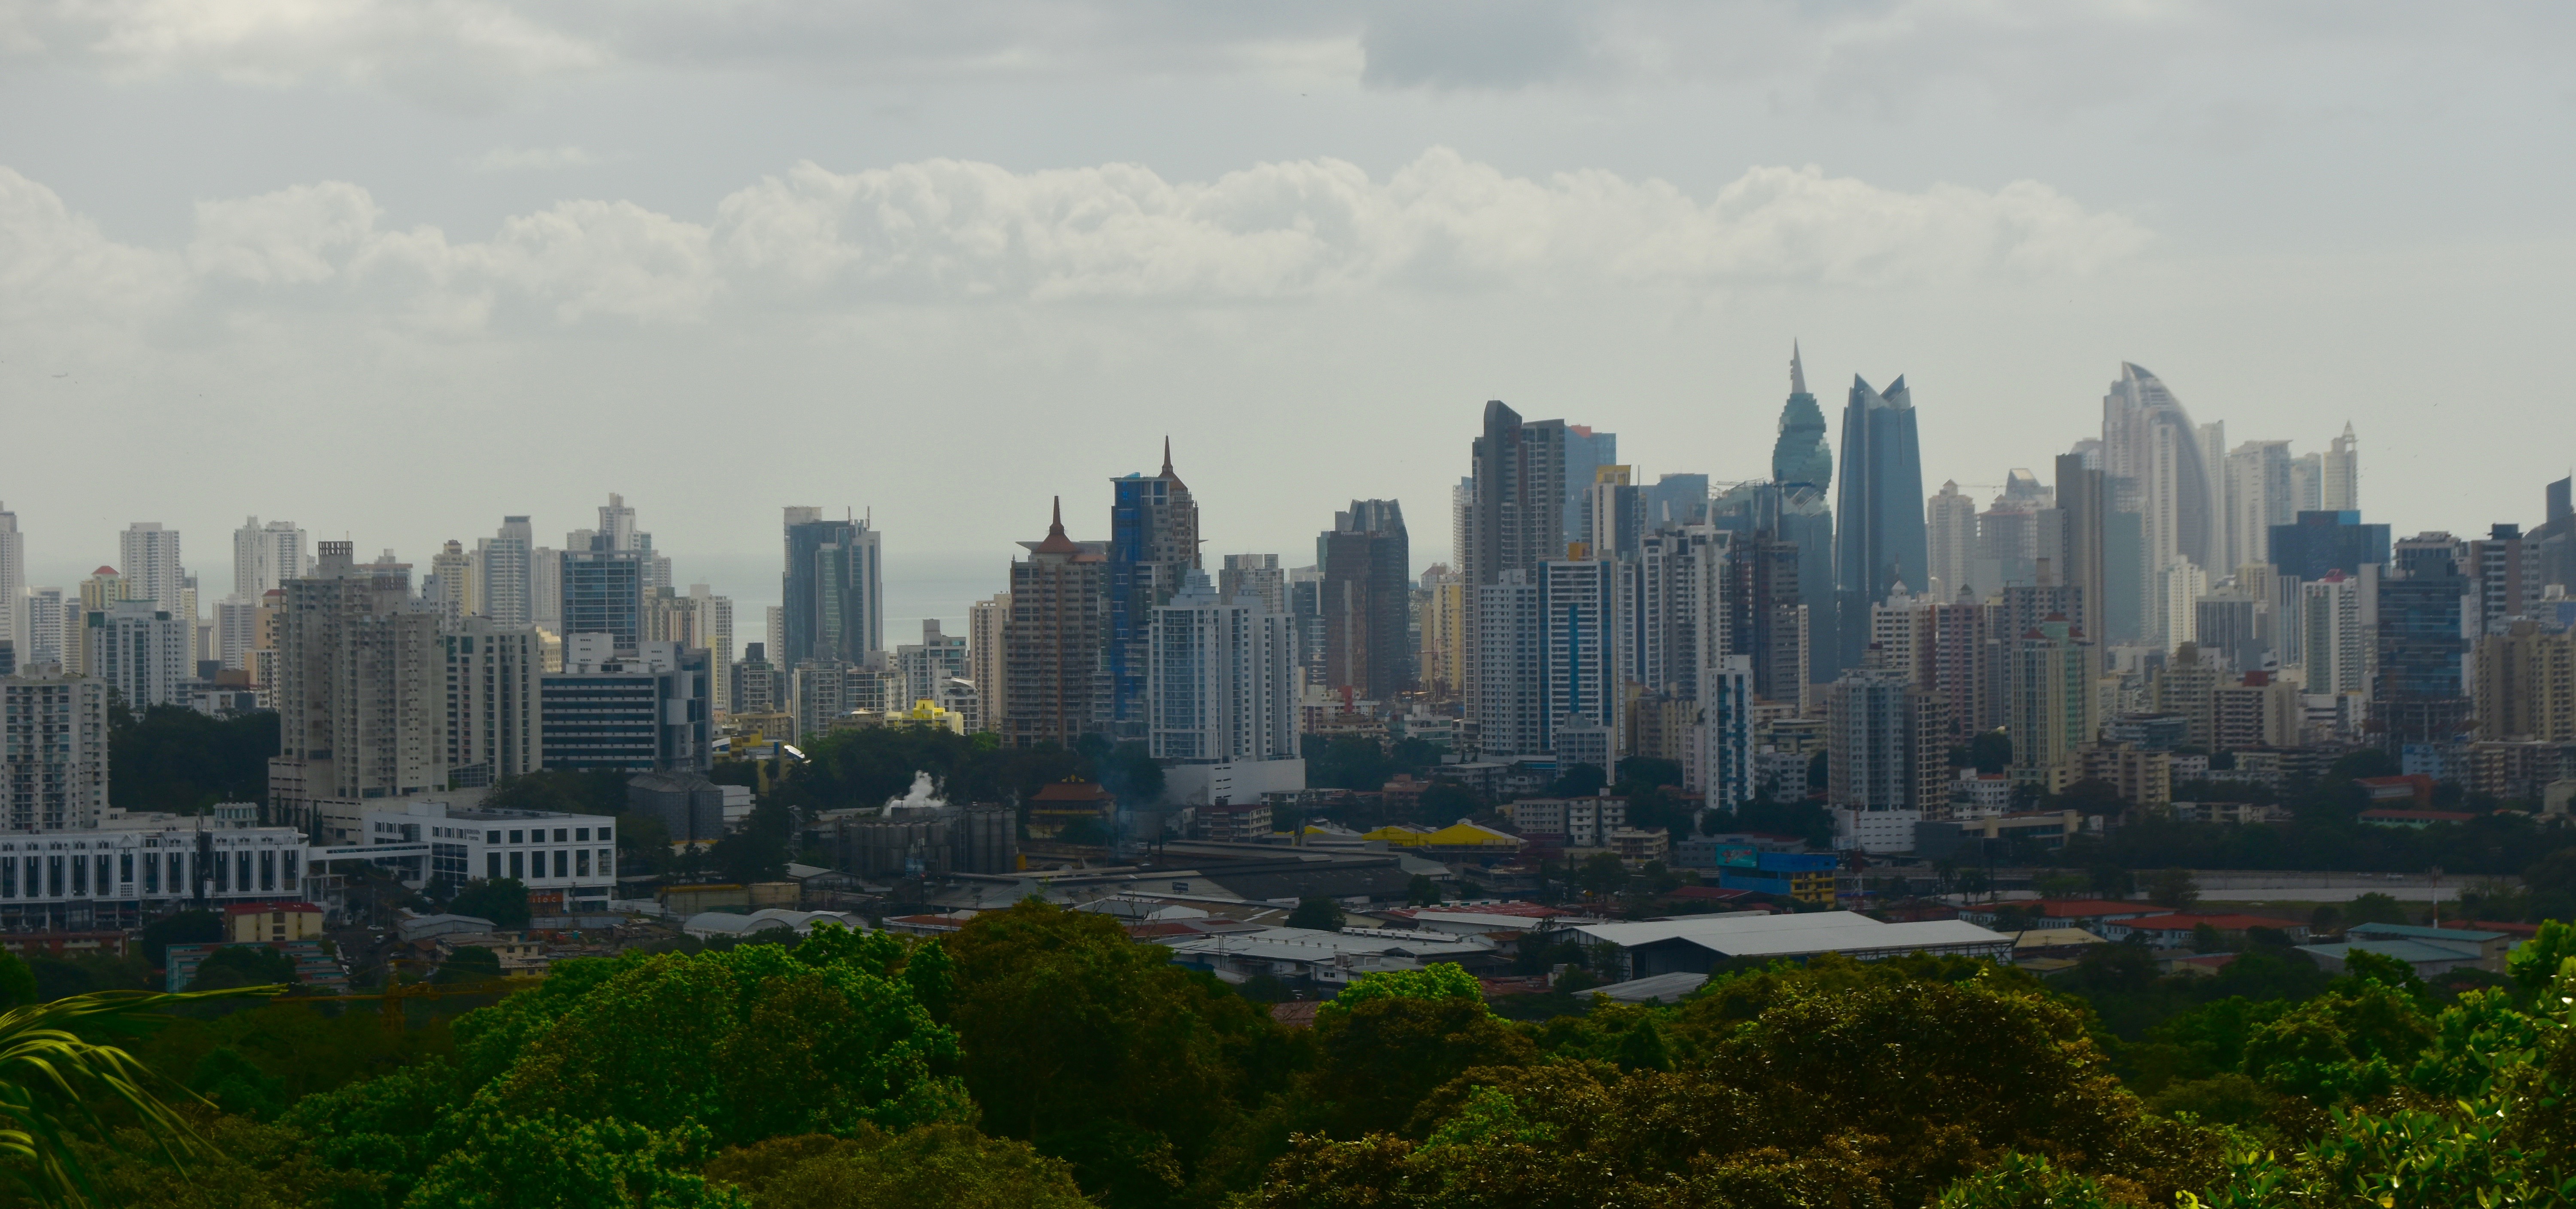 Metropolitan P{ark View of Panama City